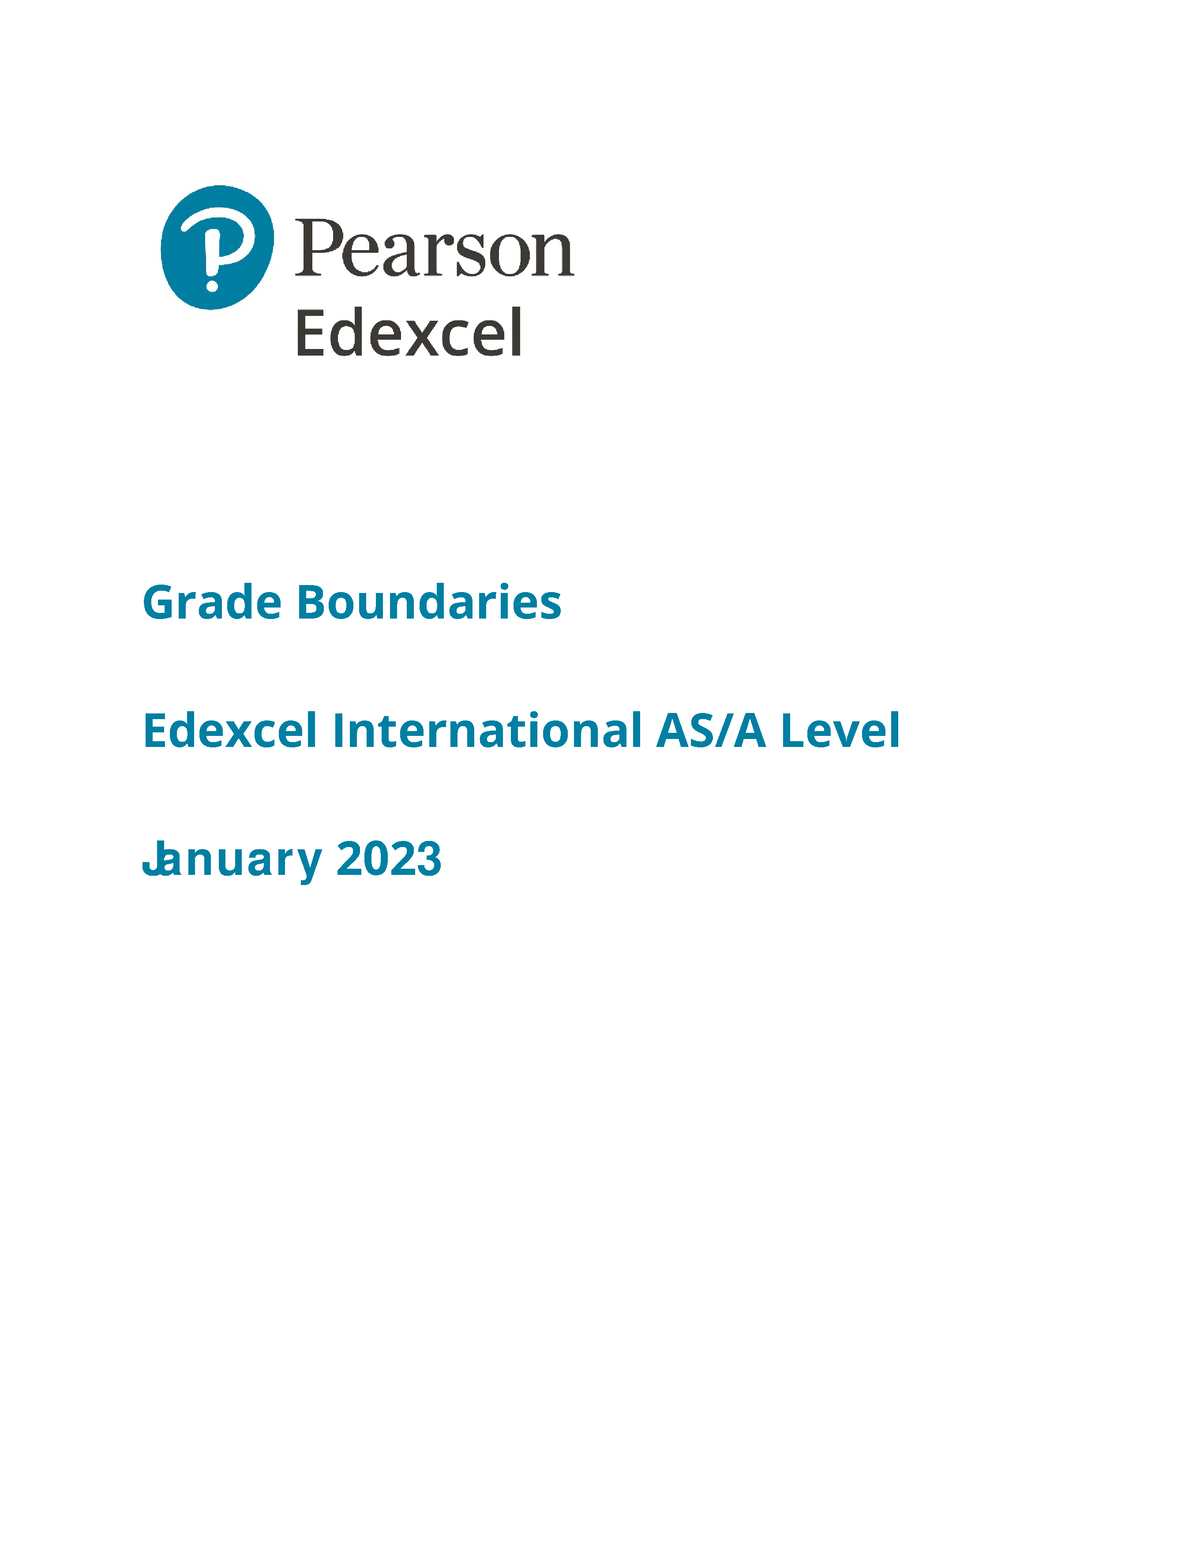 2301 ial subject grade boundaries v1 Grade Boundaries Edexcel